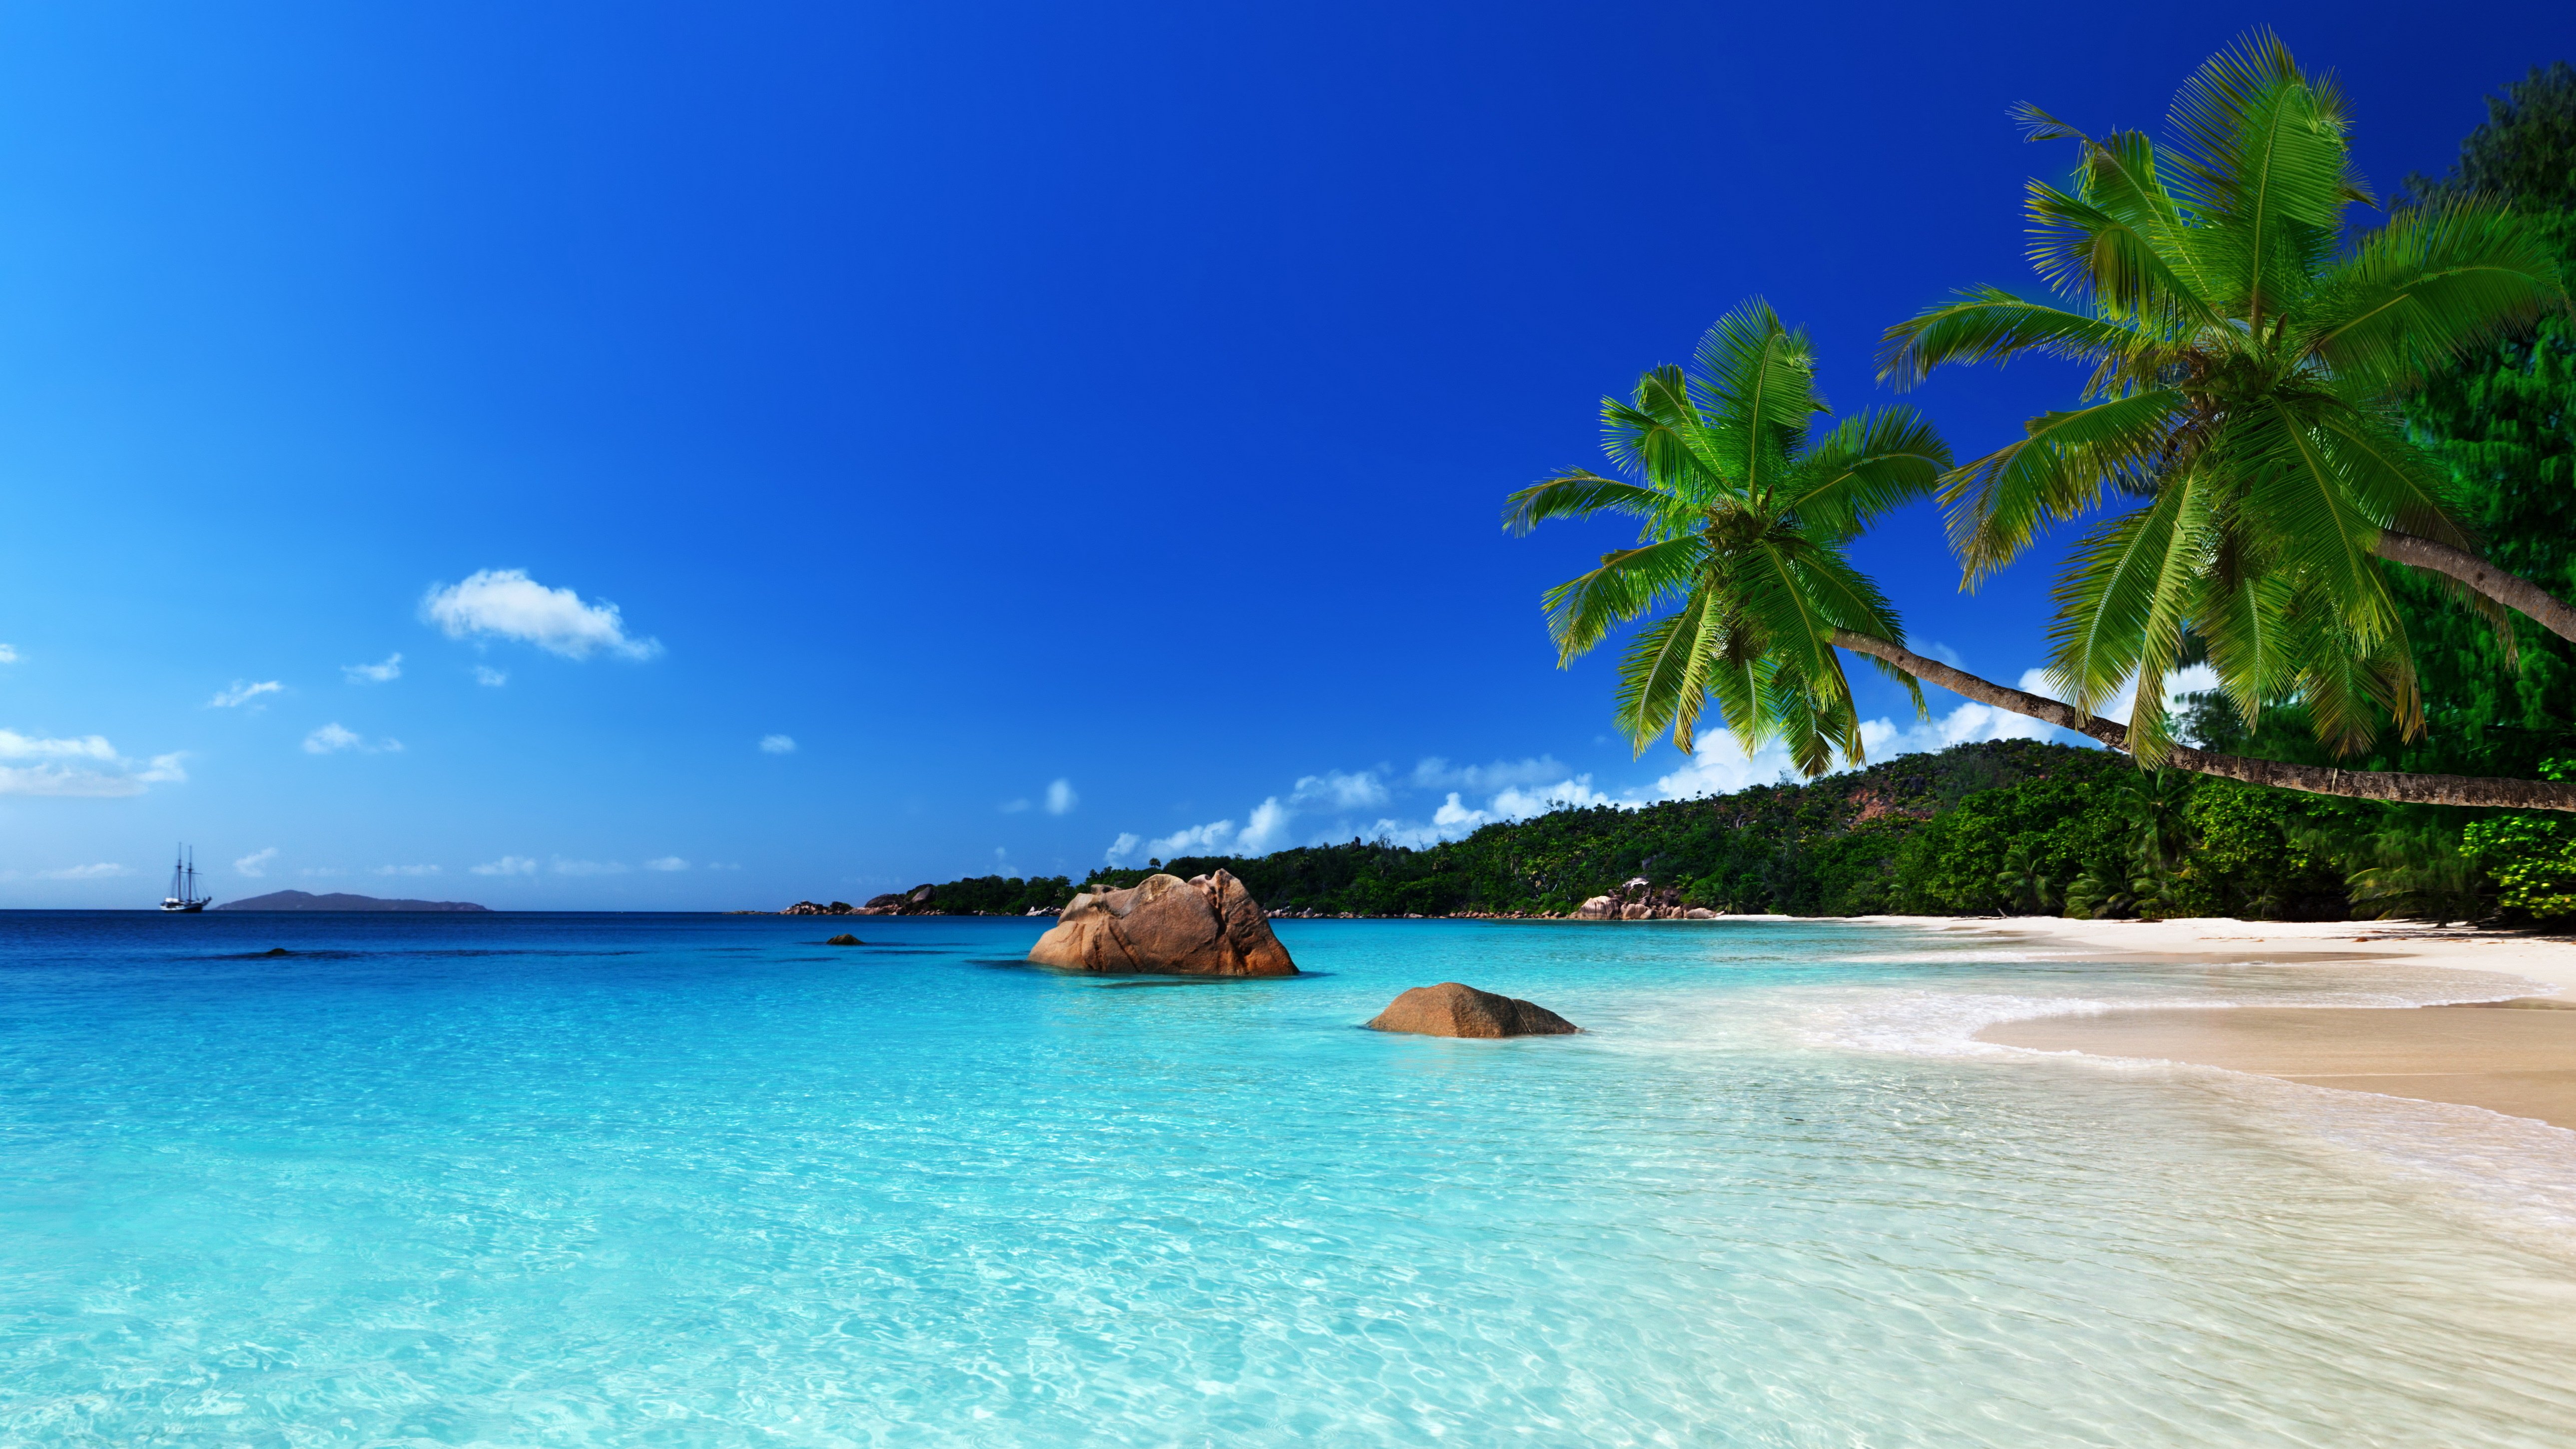  paradise beach ocean sea palm summer coast wallpaper background 5156x2900